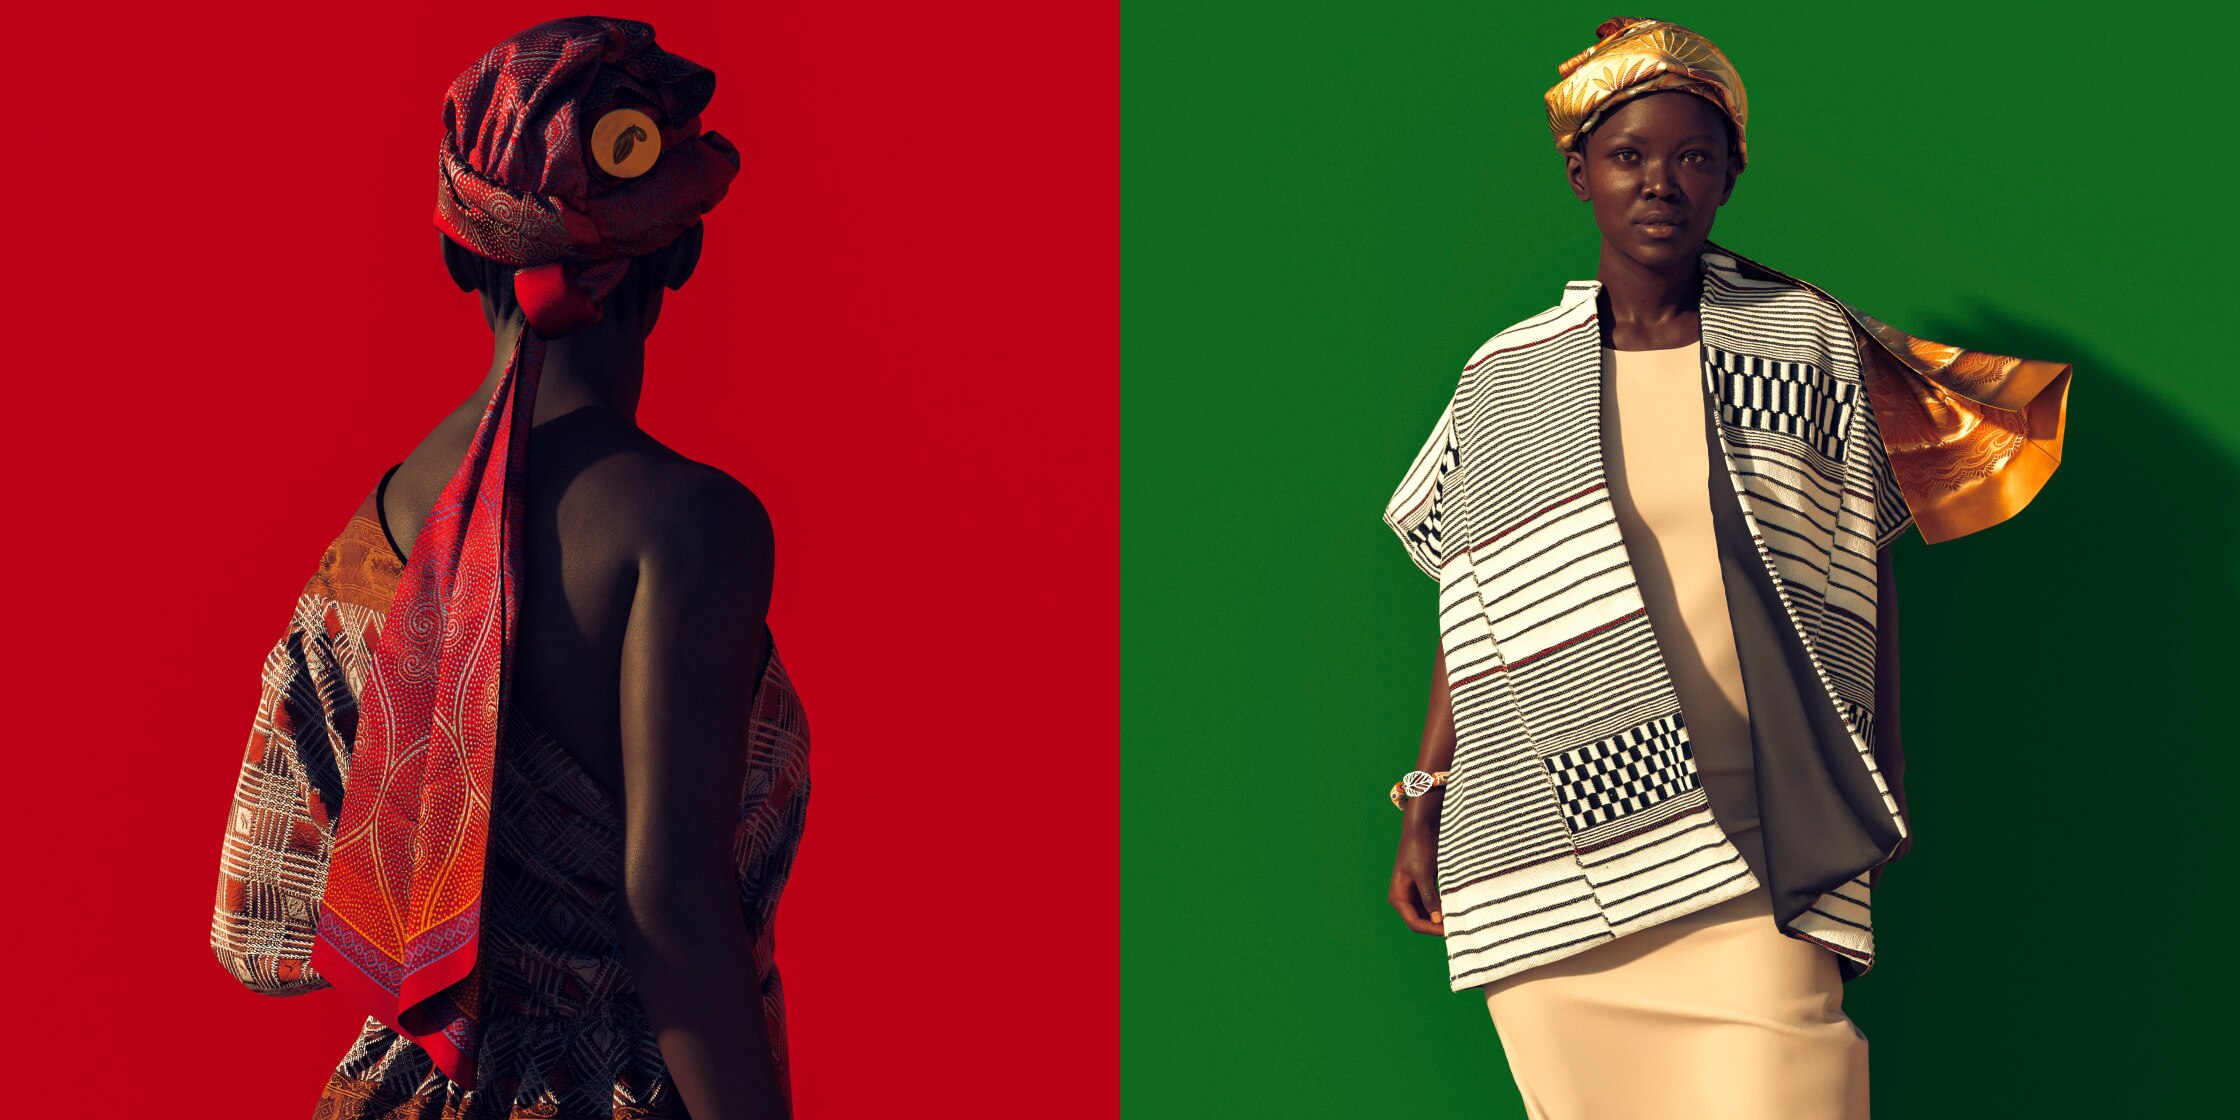 Ivorische Modeartikel auf rotem und grünem Hintergrund